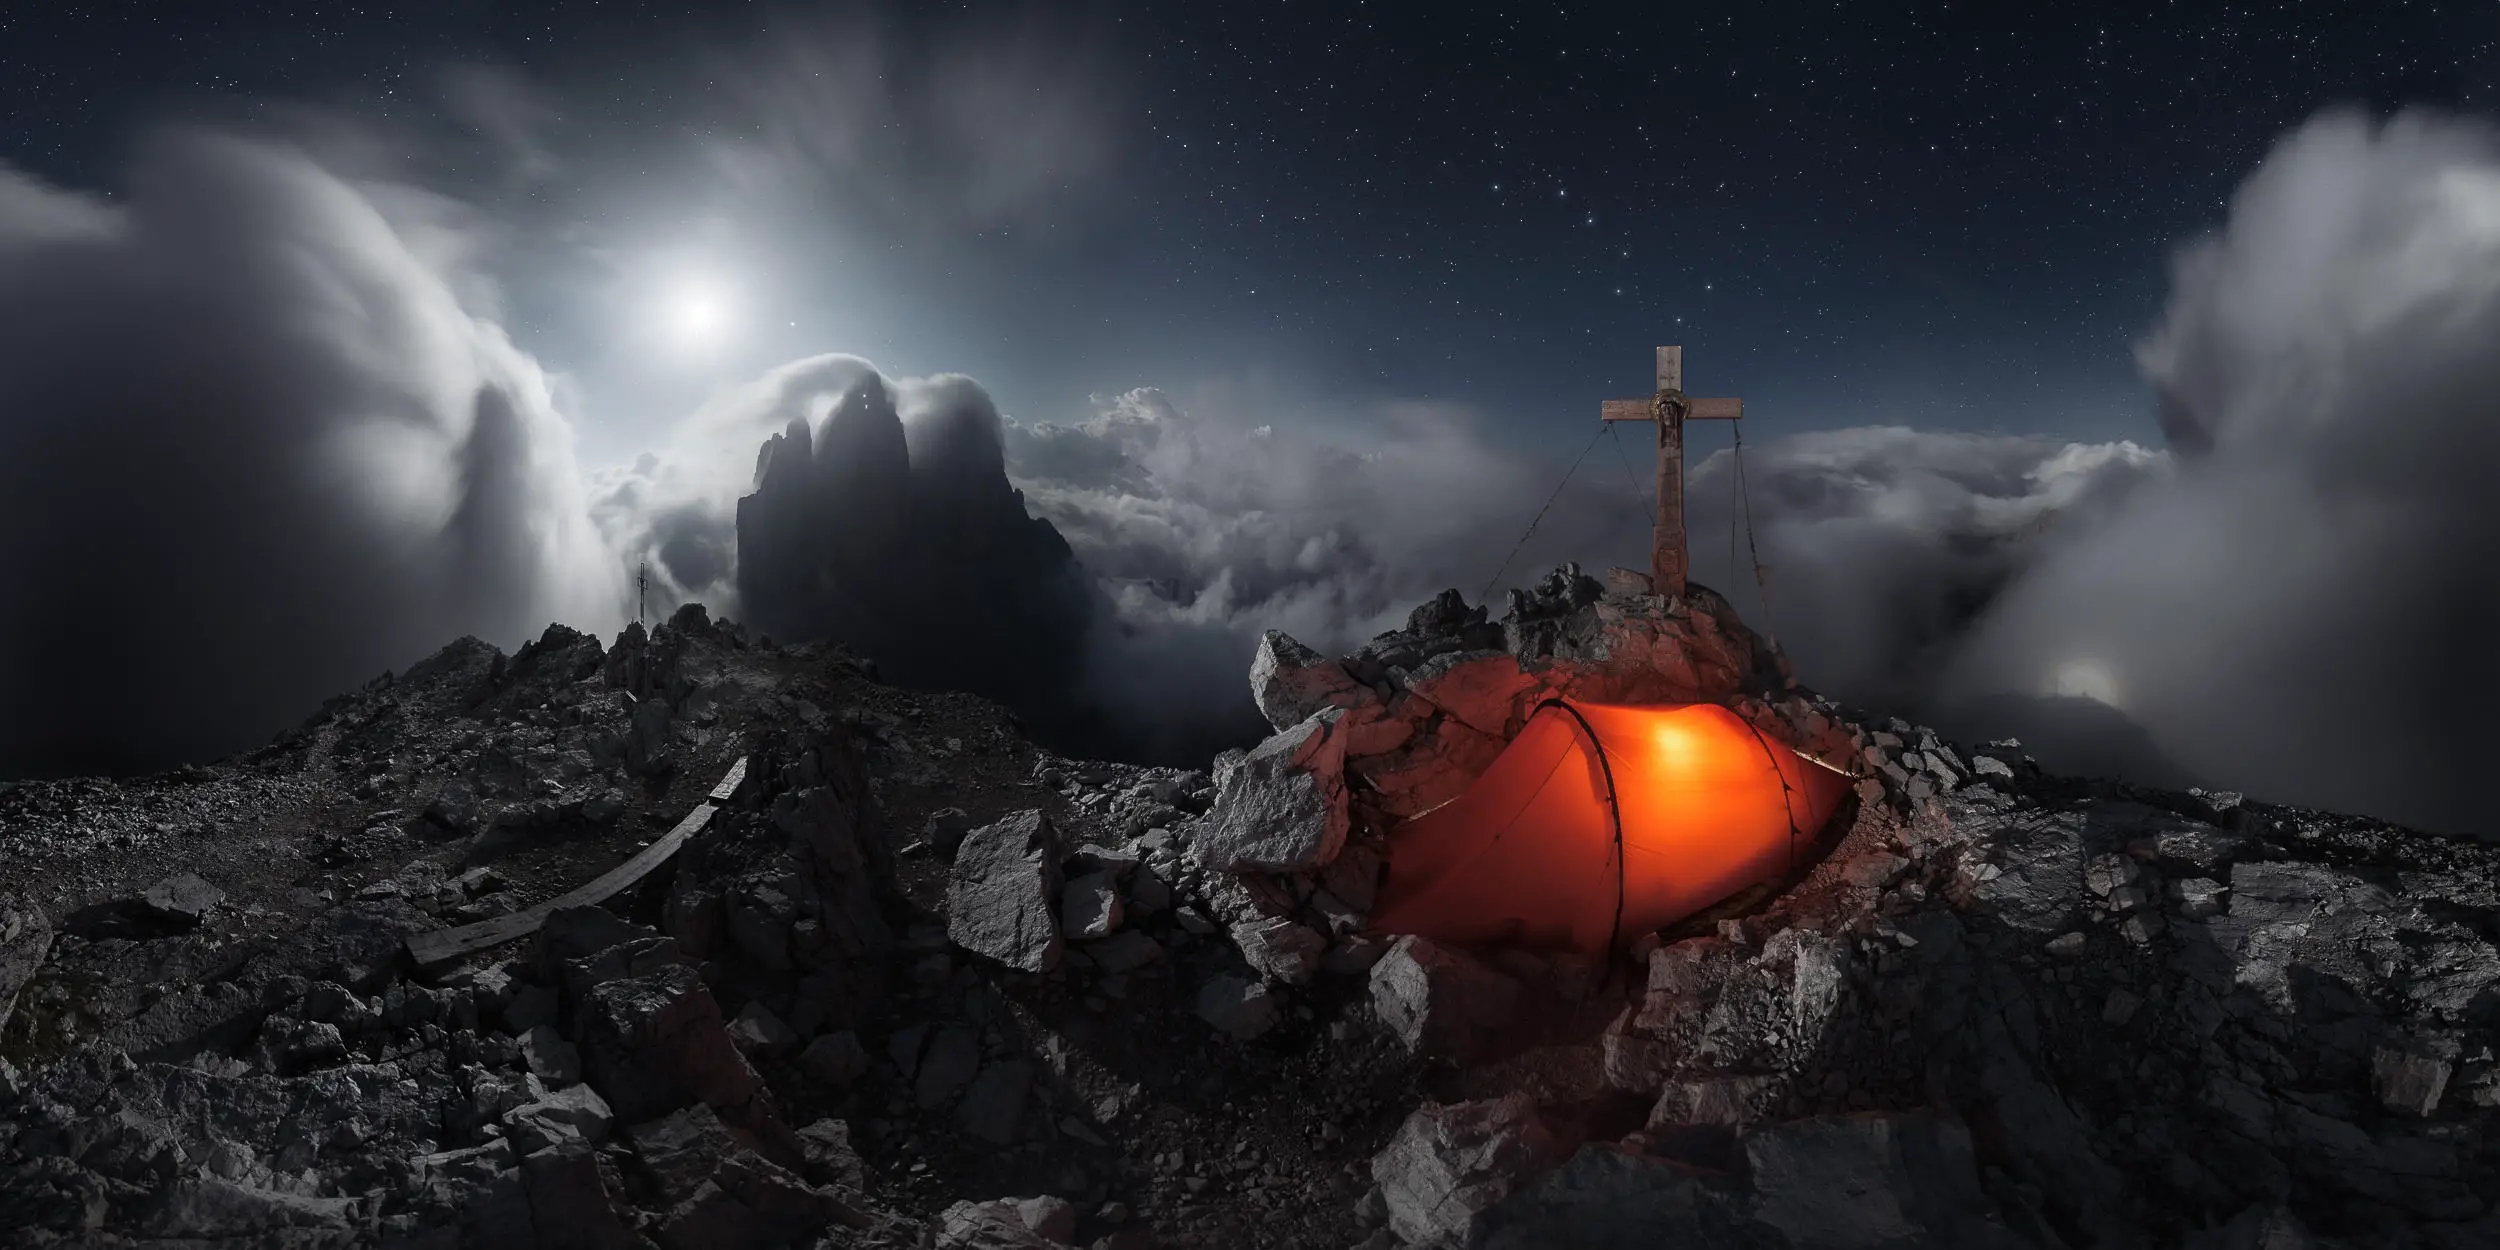 Le photographe Alessandro Cantarelli a gravi les Trois Pics de Lavaredo dans les Dolomites italiennes par une matinée ensoleillée, mais a rapidement été inondé de brouillard. Tard dans la nuit, il vit quelque chose de merveilleux. Cantarelli écrit : 